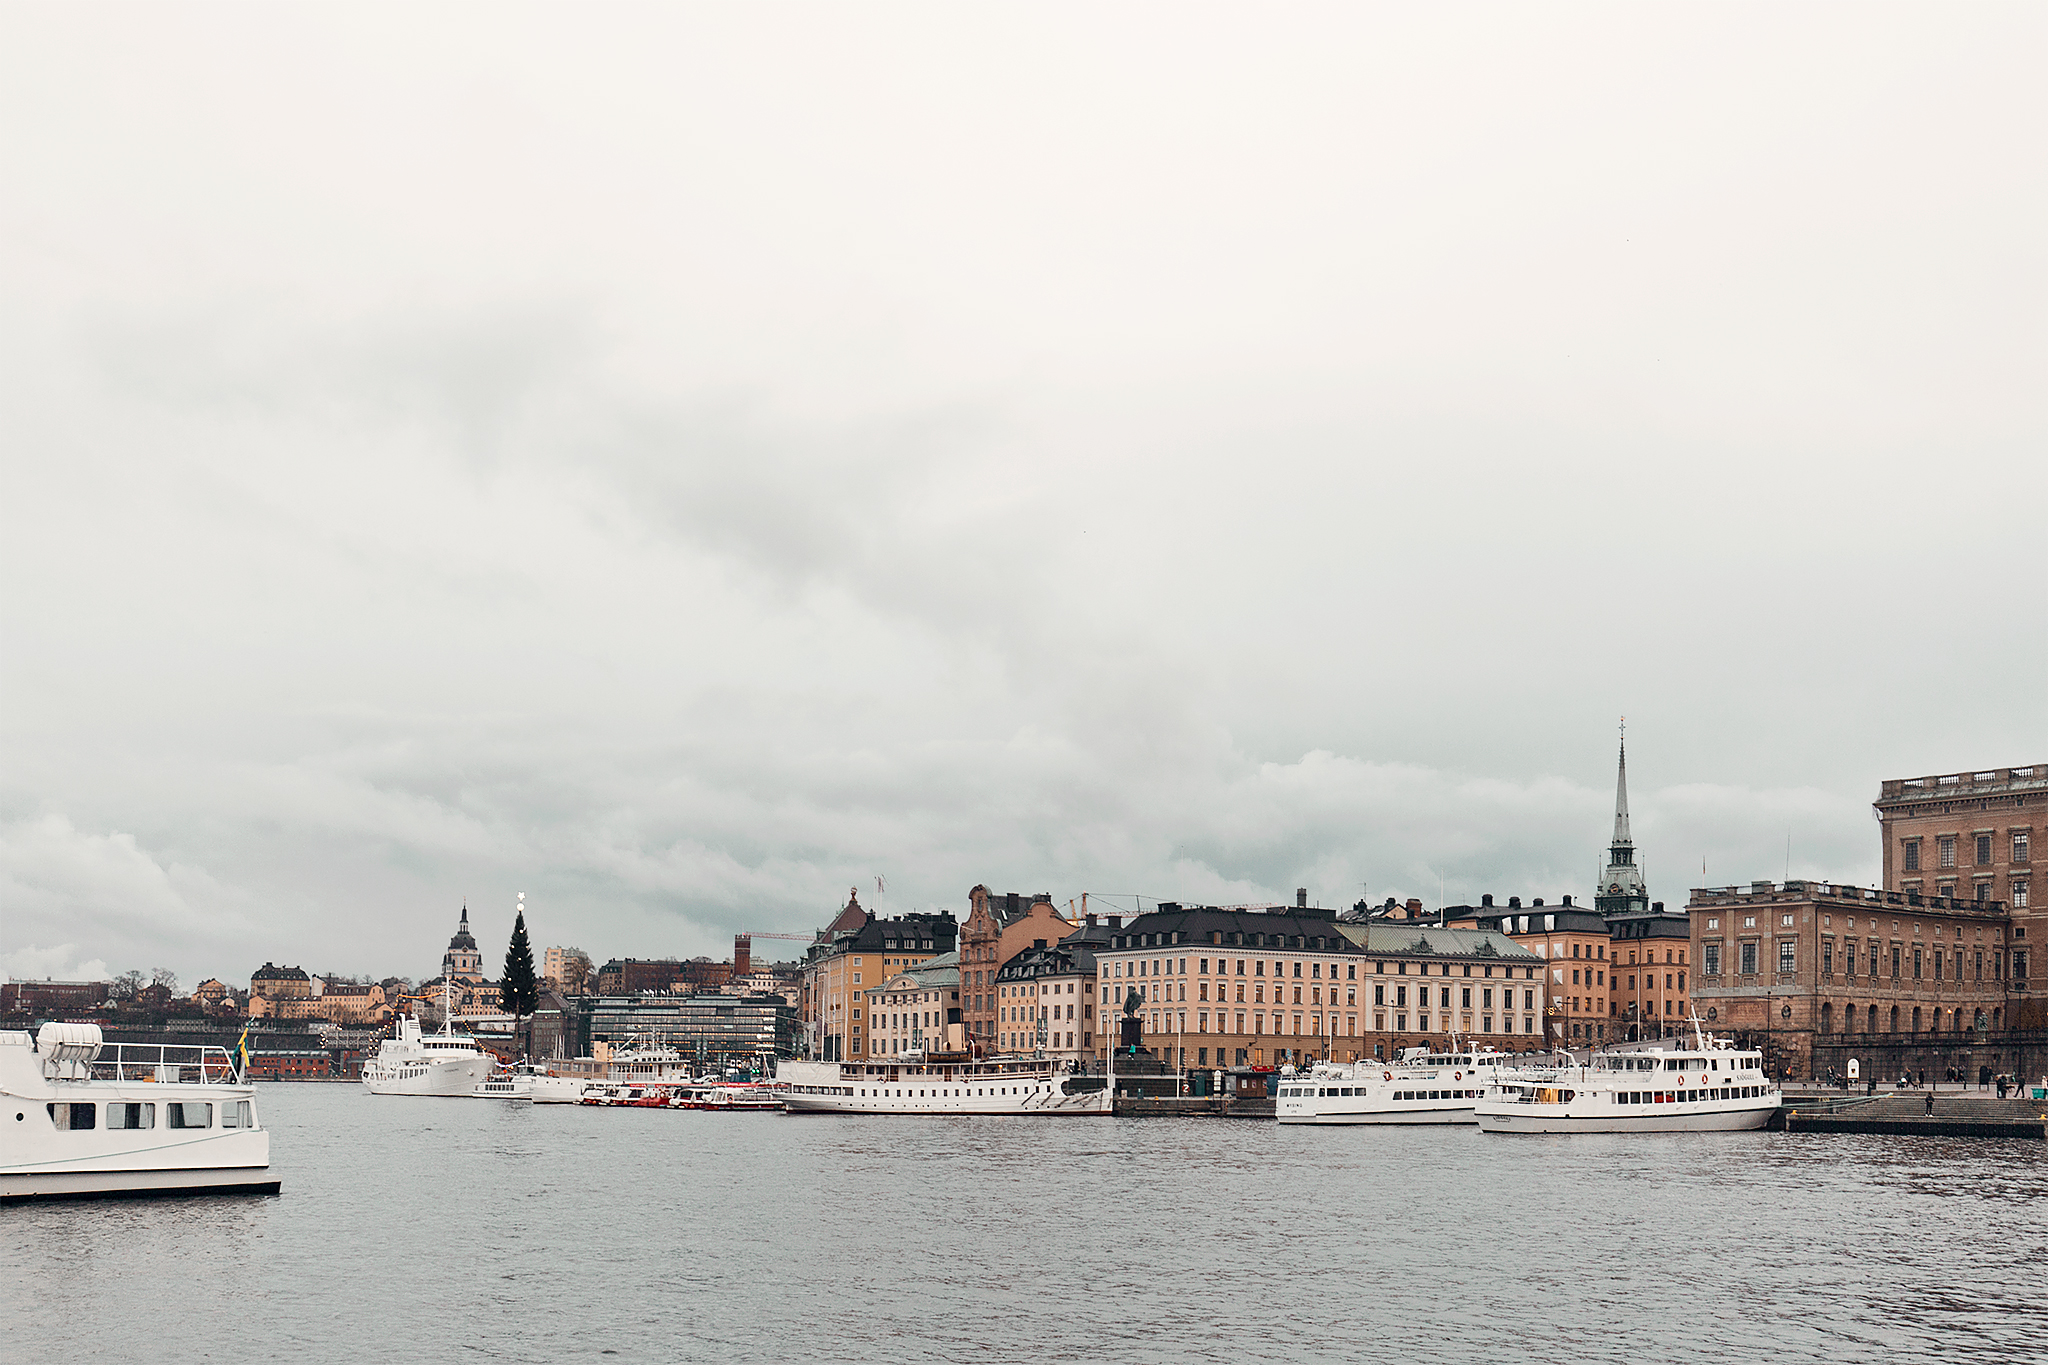 Båt till Vaxholm från Strömkajen